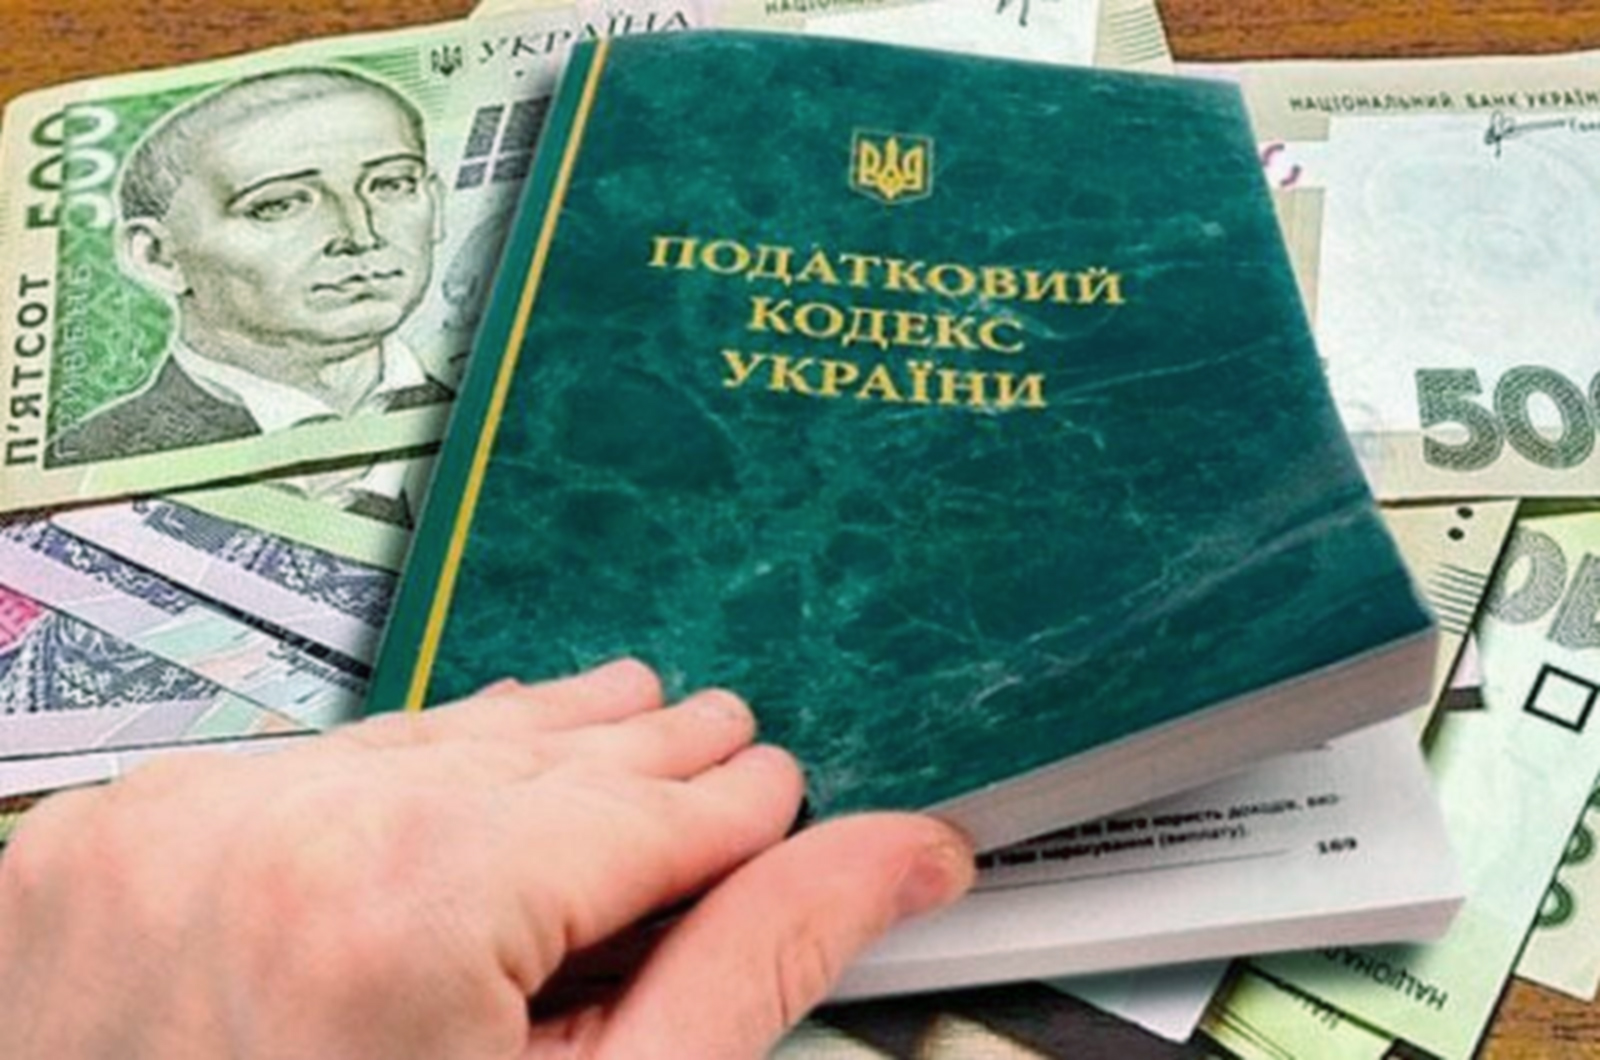 Штрафы от 17 000 до 85 000 гривен: кого из украинцев будут по-новому наказывать за неуплату налогов